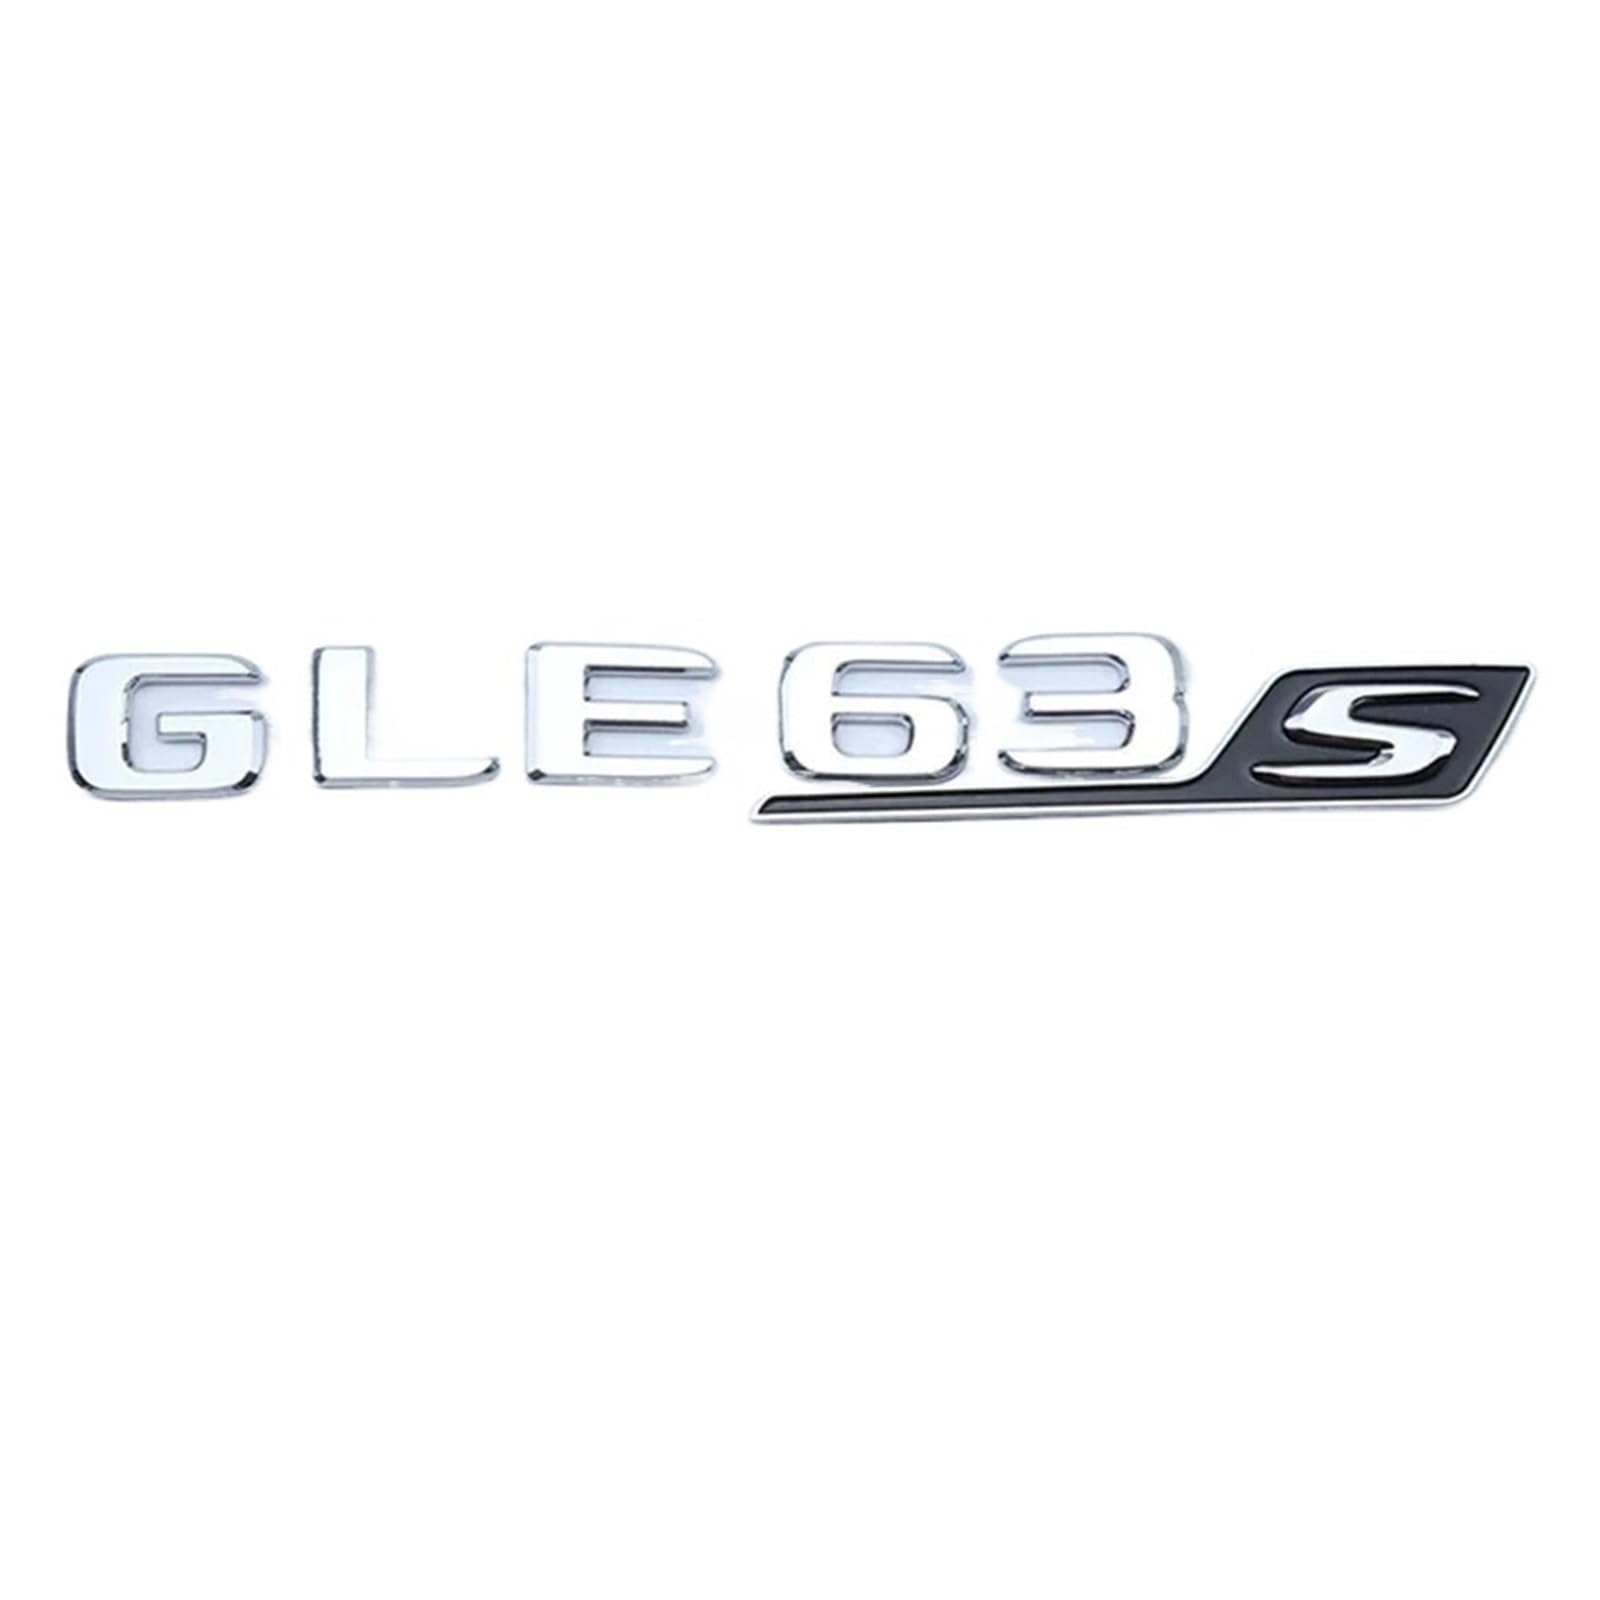 ALMVIS 3D ABS Auto Hinten Stamm Aufkleber Emblem Logo GLE63S Abzeichen Fit for Mercedes AMG CE GLC GLE 63 S W205 w204 W213 W212 X253 W167 W166 C292 Auto-Logo-Aufkleber(GLE63S Silver) von ALMVIS